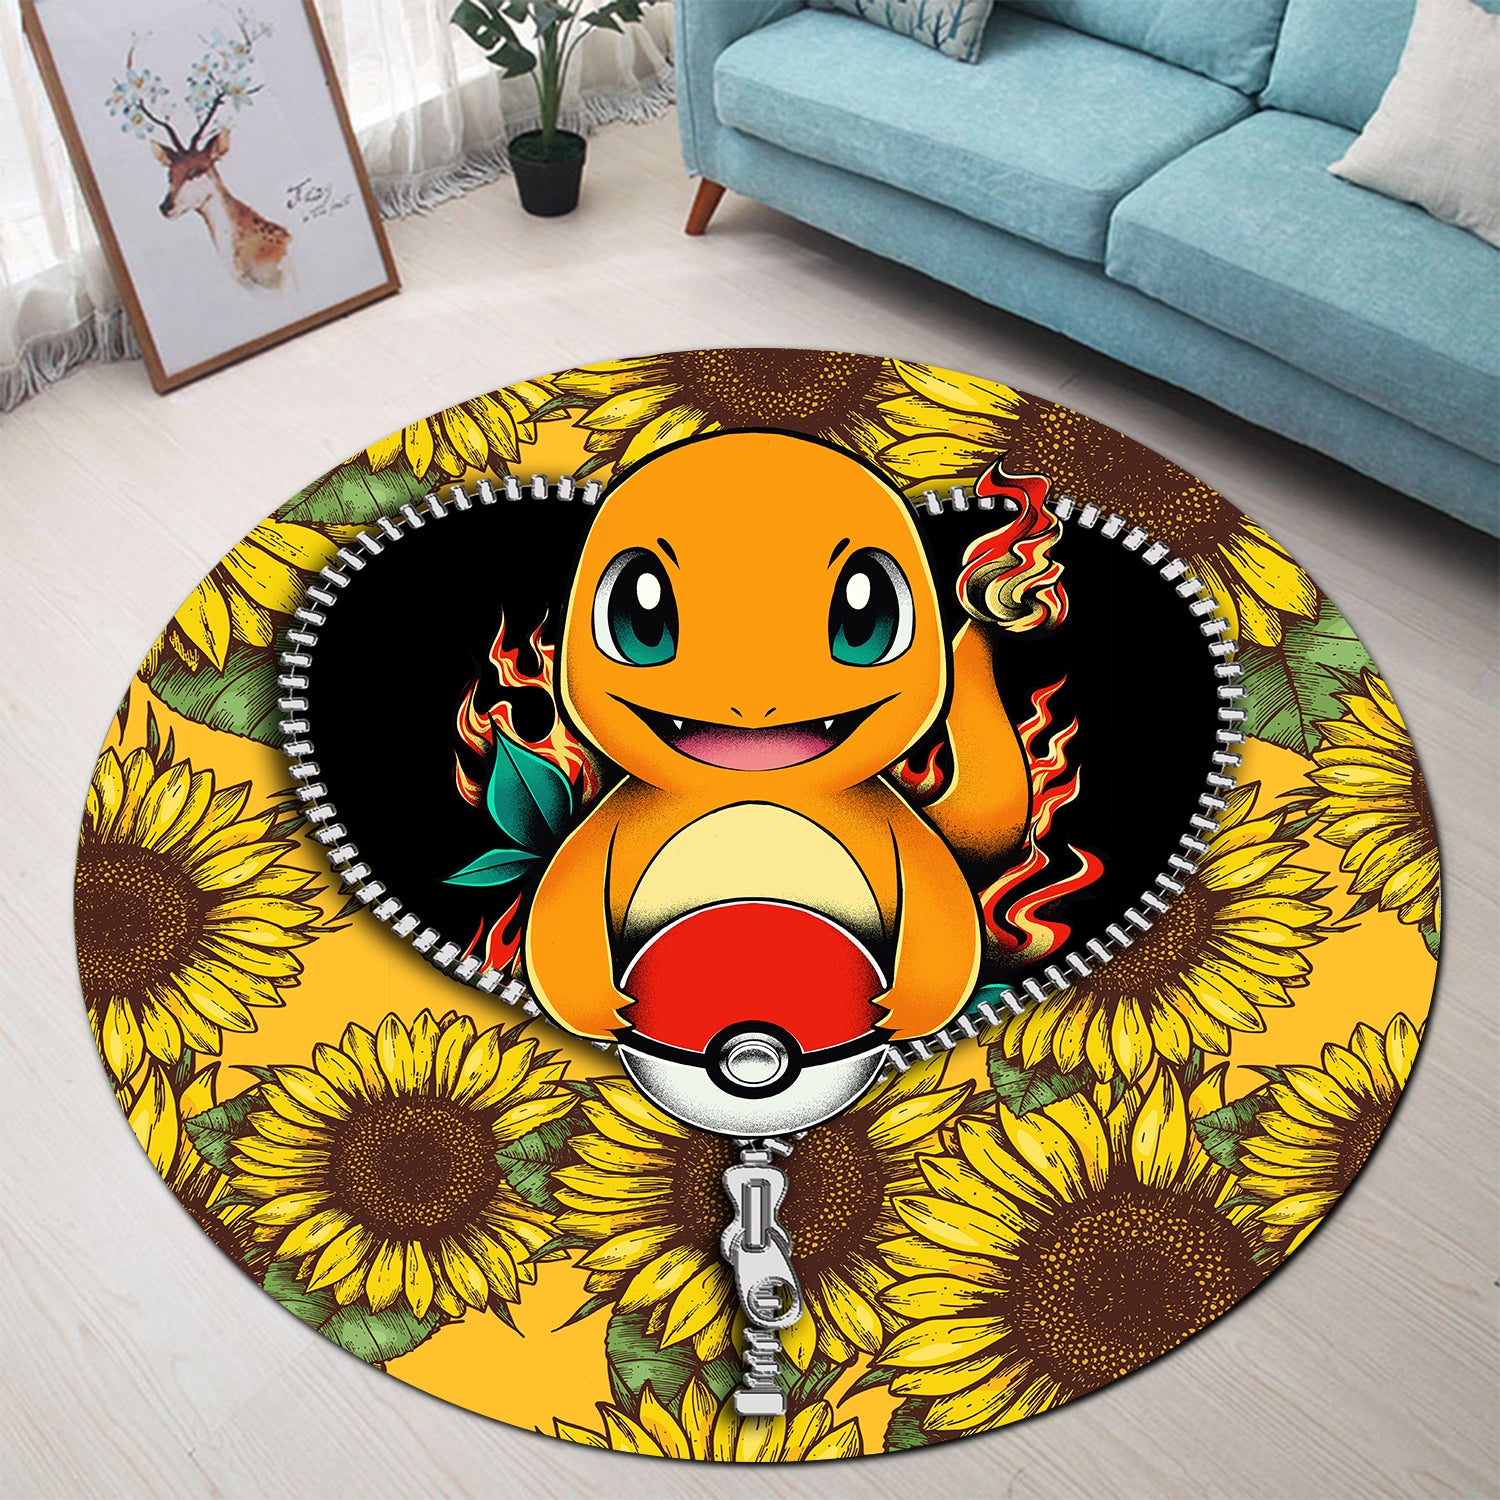 Charmander Pokemon Sunflower Zipper Round Carpet Rug Bedroom Livingroom Home Decor Nearkii